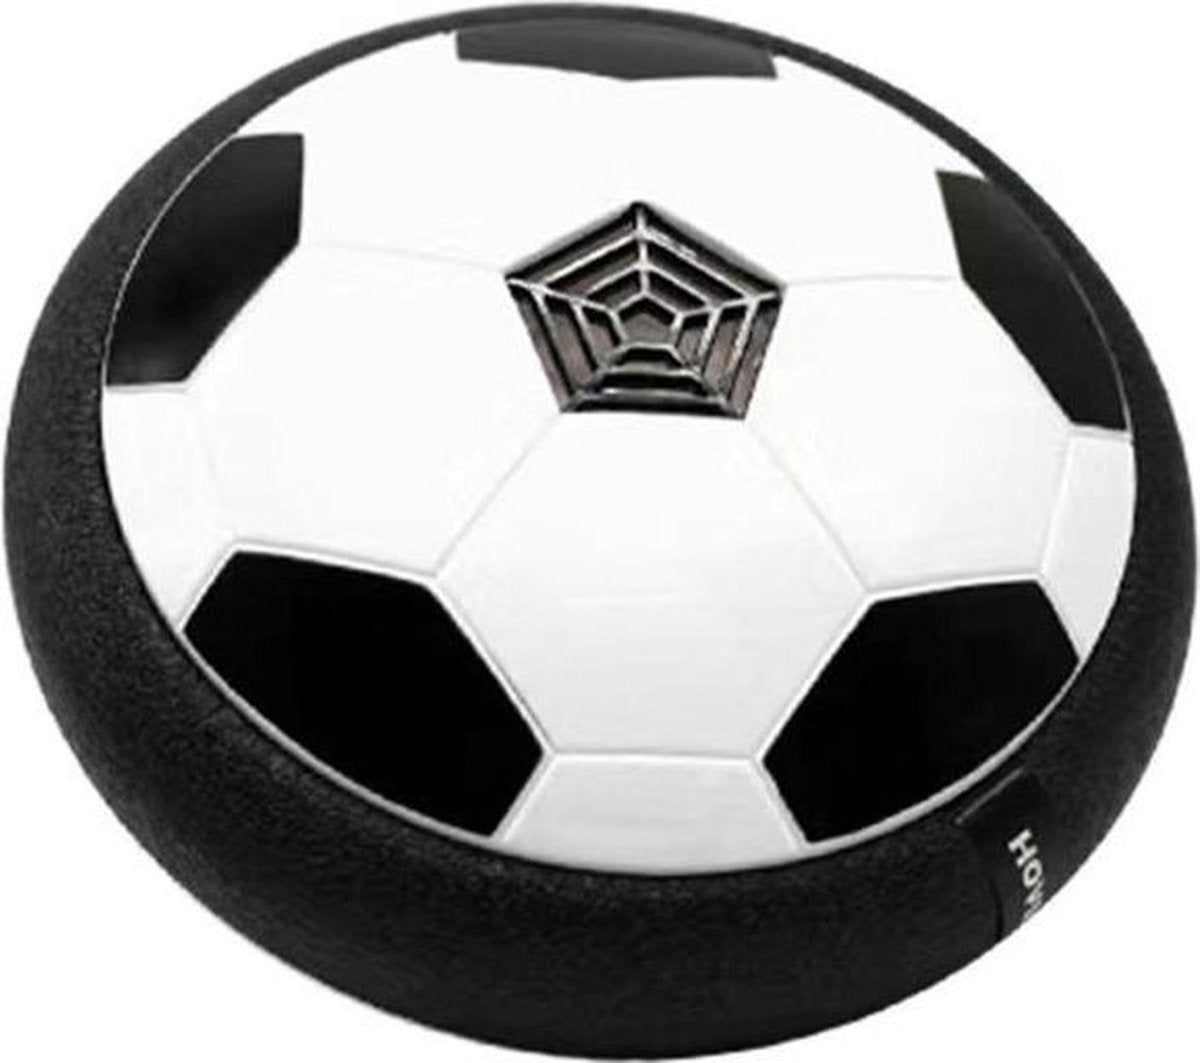 AirPlay voetbal een zwevende schijf in de vorm van een bal met zwarte witte kleuren en zwarte rand op witte achtergrond.